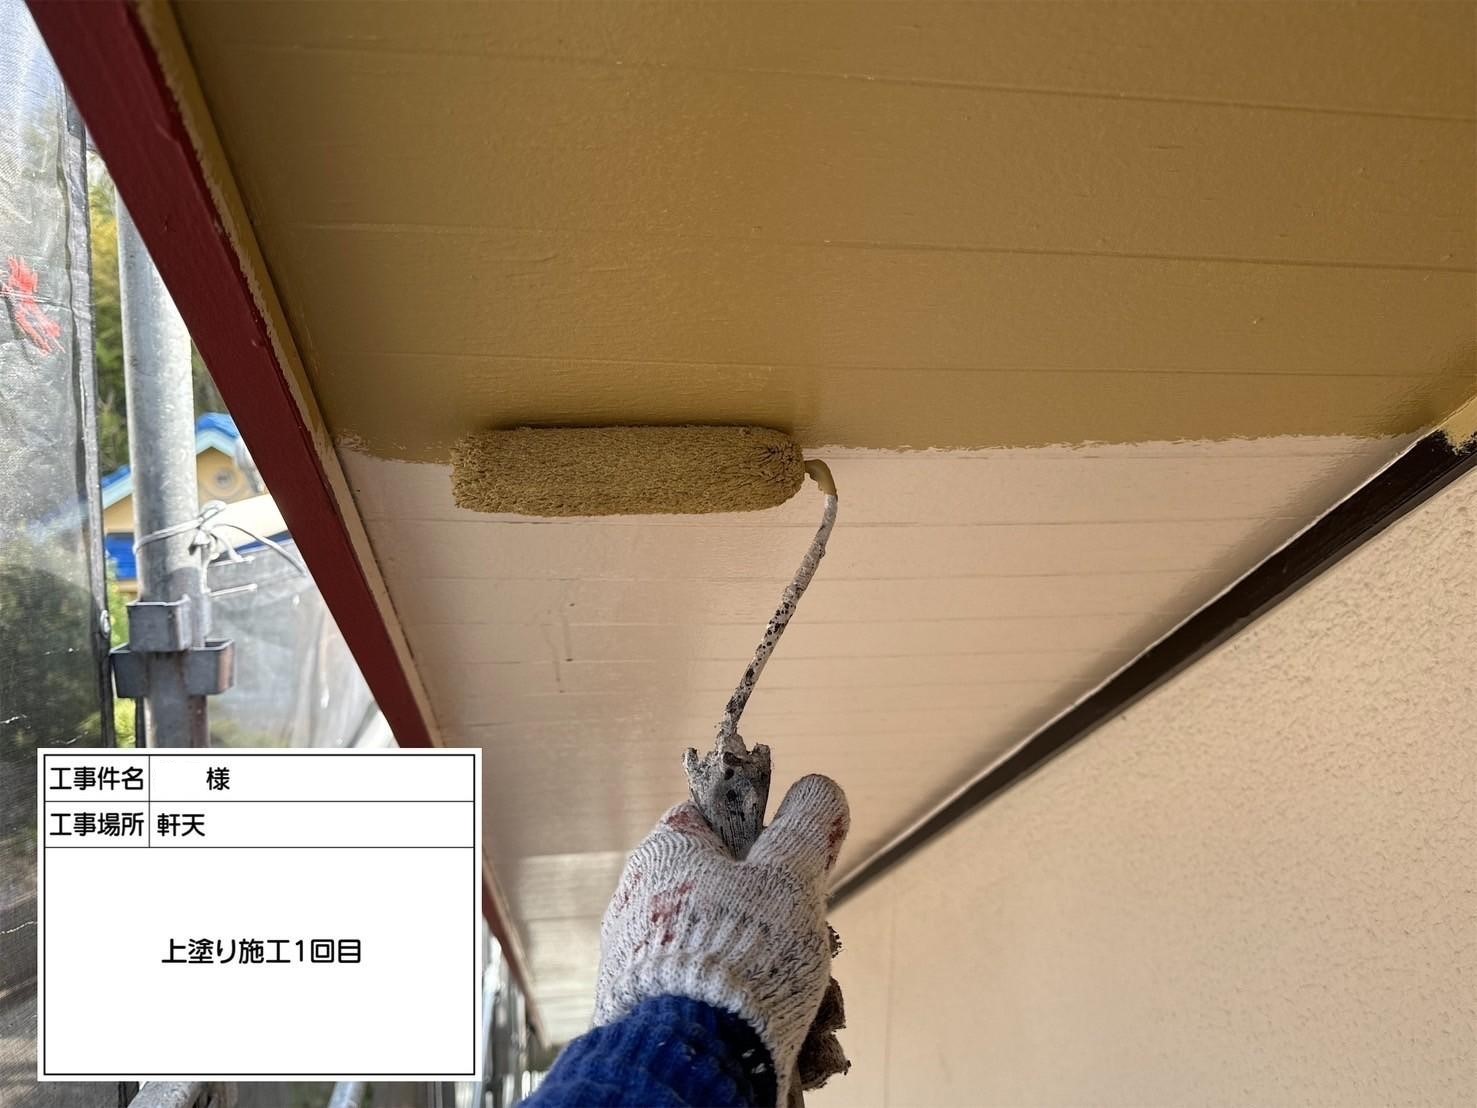 福岡県福岡市東区香椎のT様邸で外壁の補修跡が目立たないように再度補修を行い、新たに発生しているひび割れの補修も行いつつ剥がれが見られる軒天や破風板まで塗装させていただきました。屋根にも汚れやさびが付着していましたので合わせてきれいに塗装しました。4/11完成です。